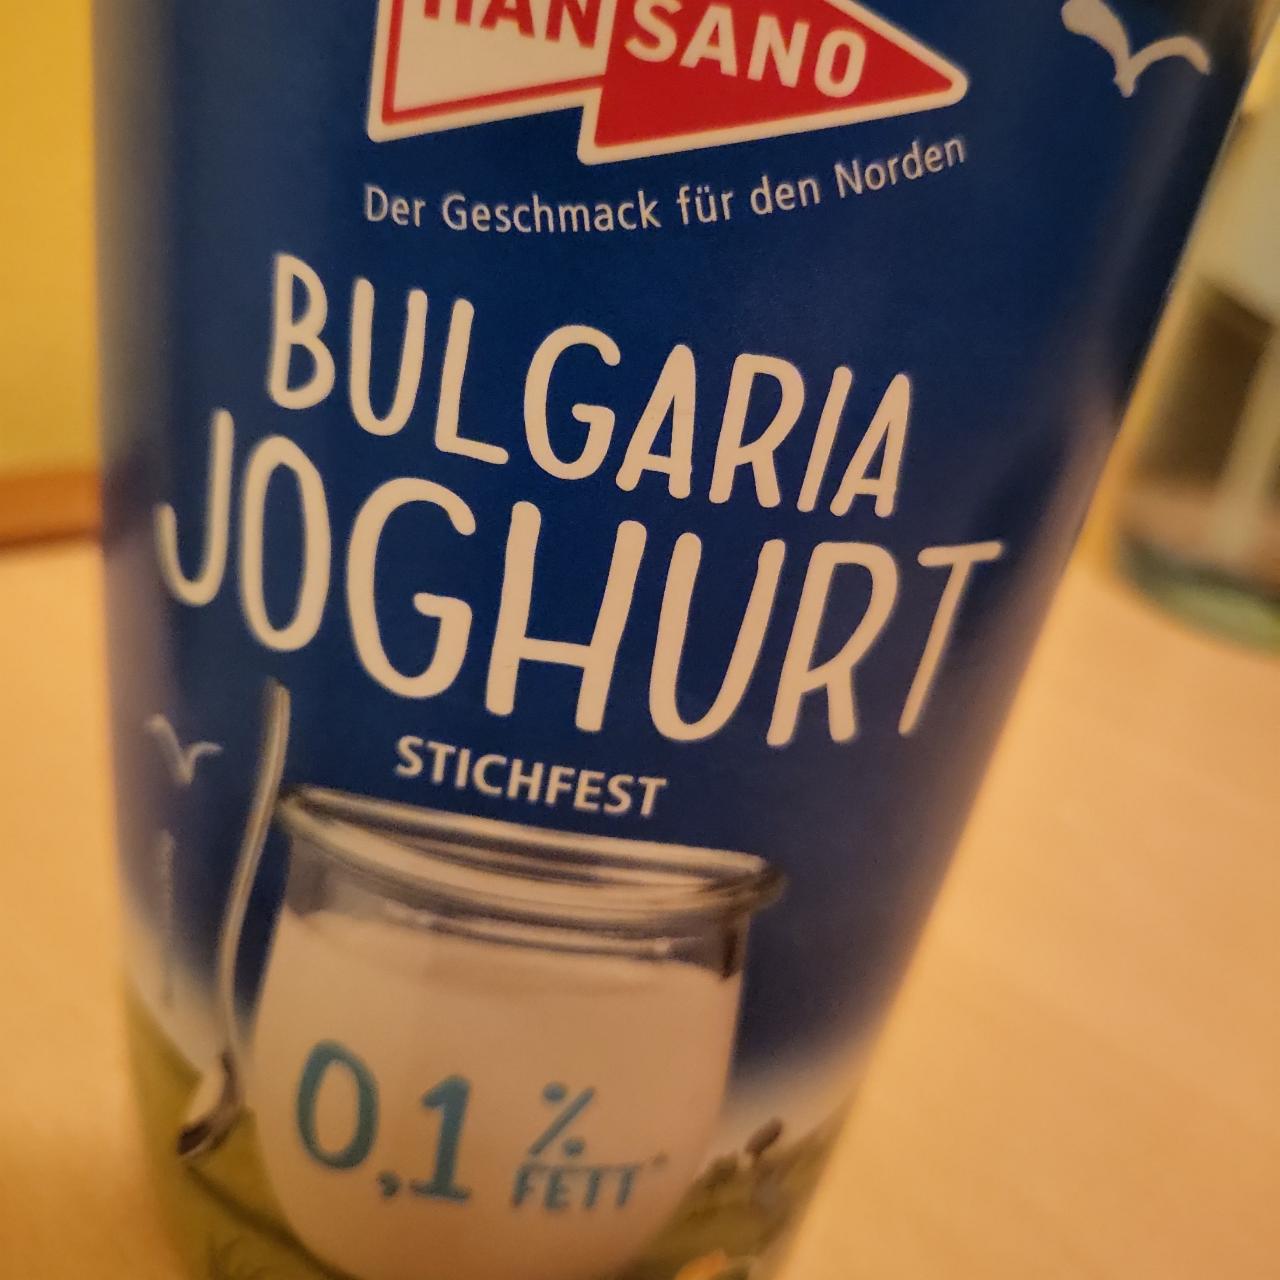 Fotografie - Bulgaria Joghurt stichfest 0,1% fett Hansano